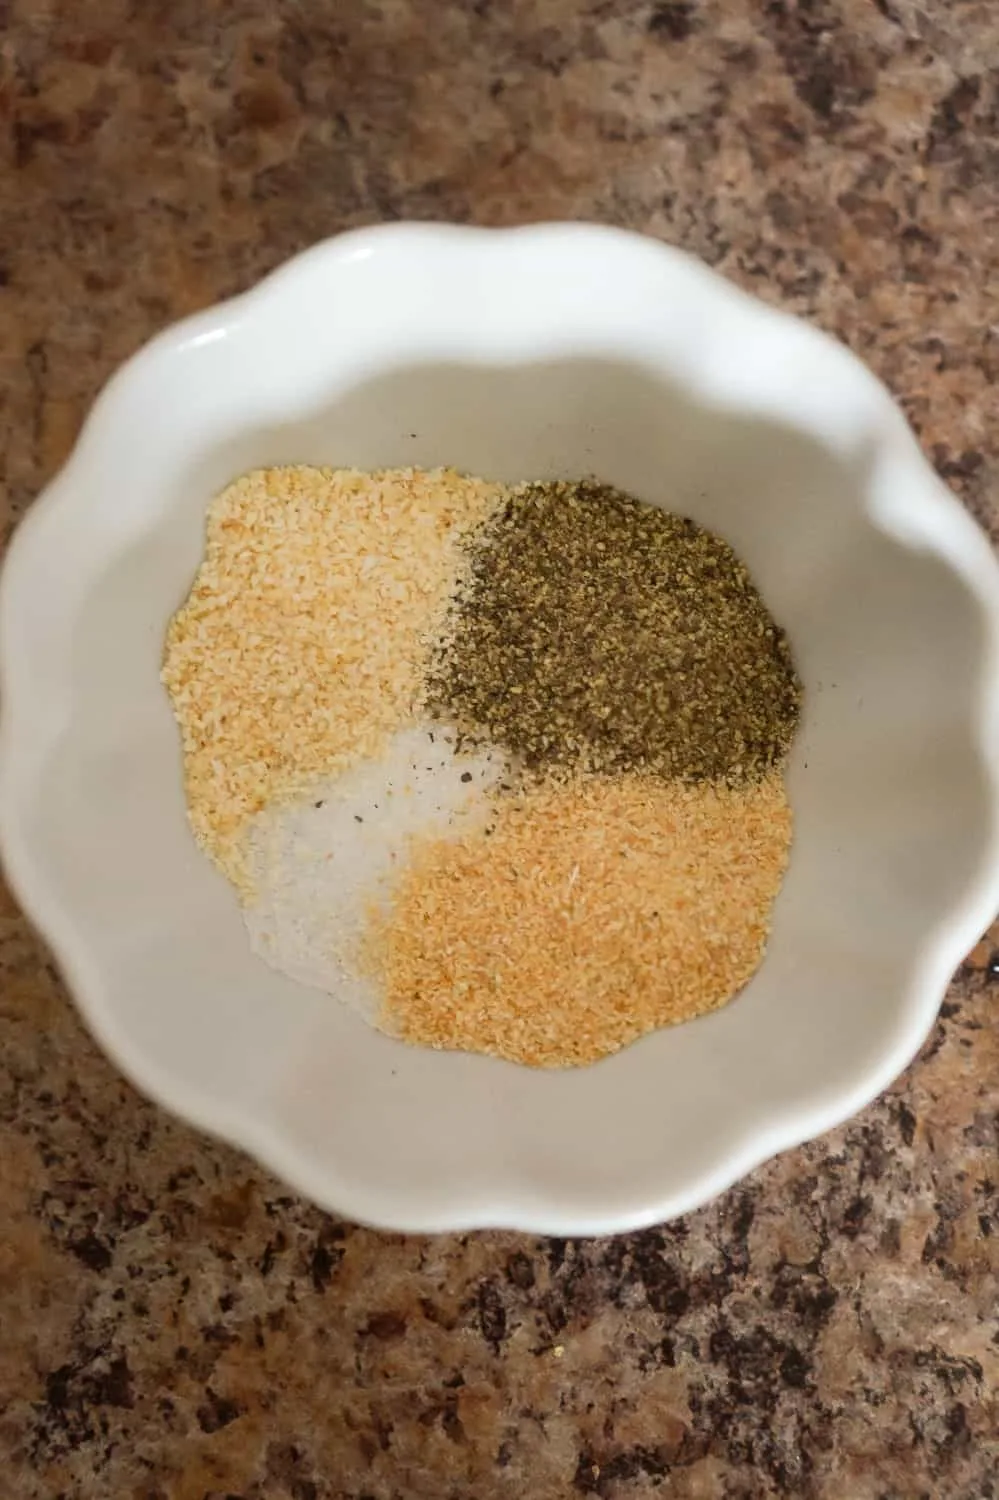 garlic powder, onion powder, salt and pepper in a small bowl